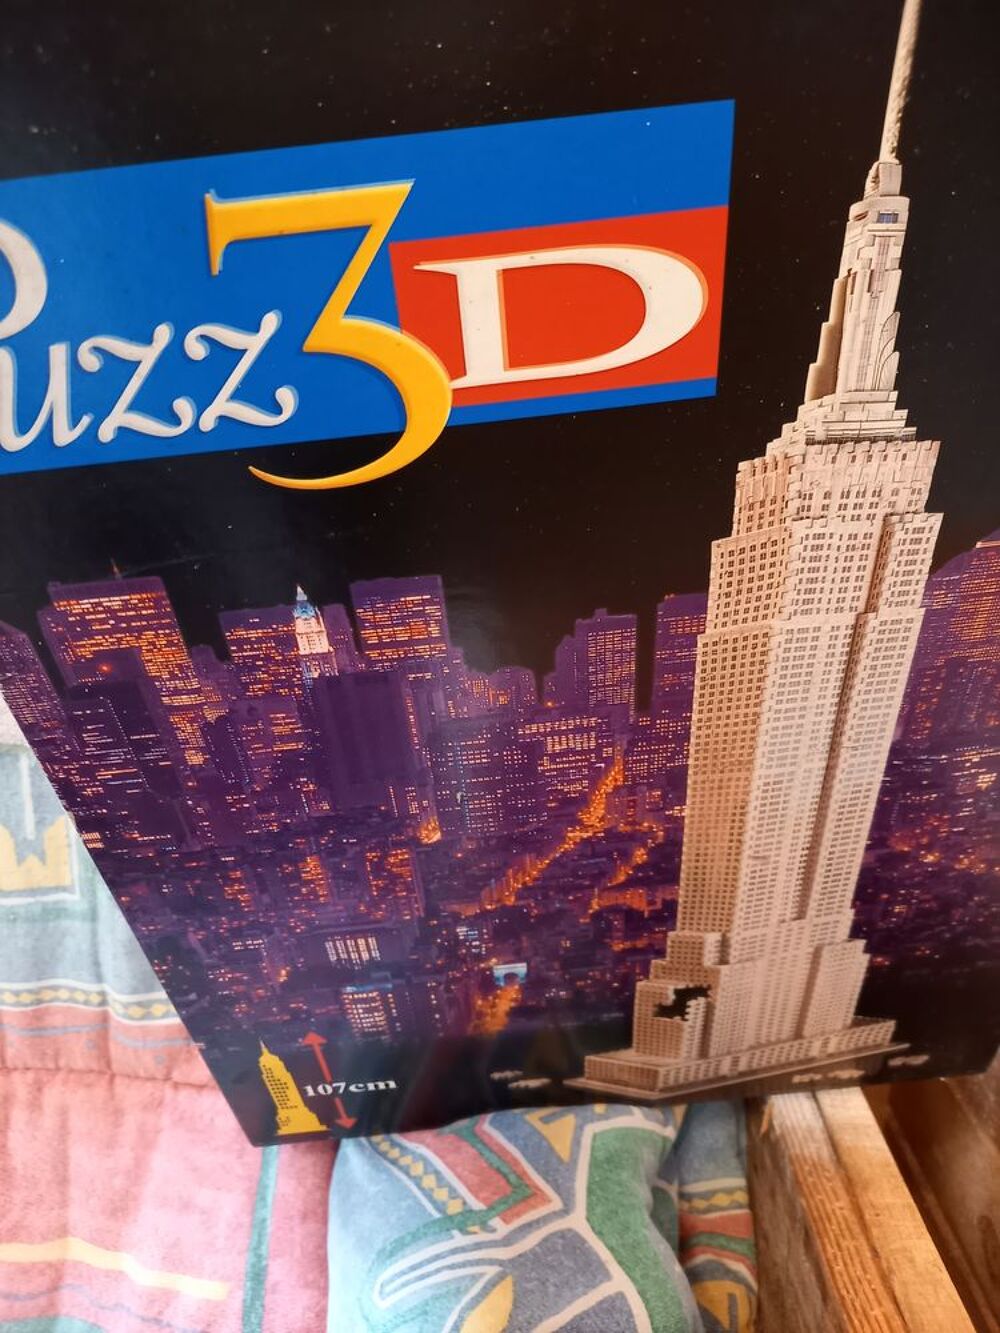 puzzle 3D Empire State Building Jeux / jouets